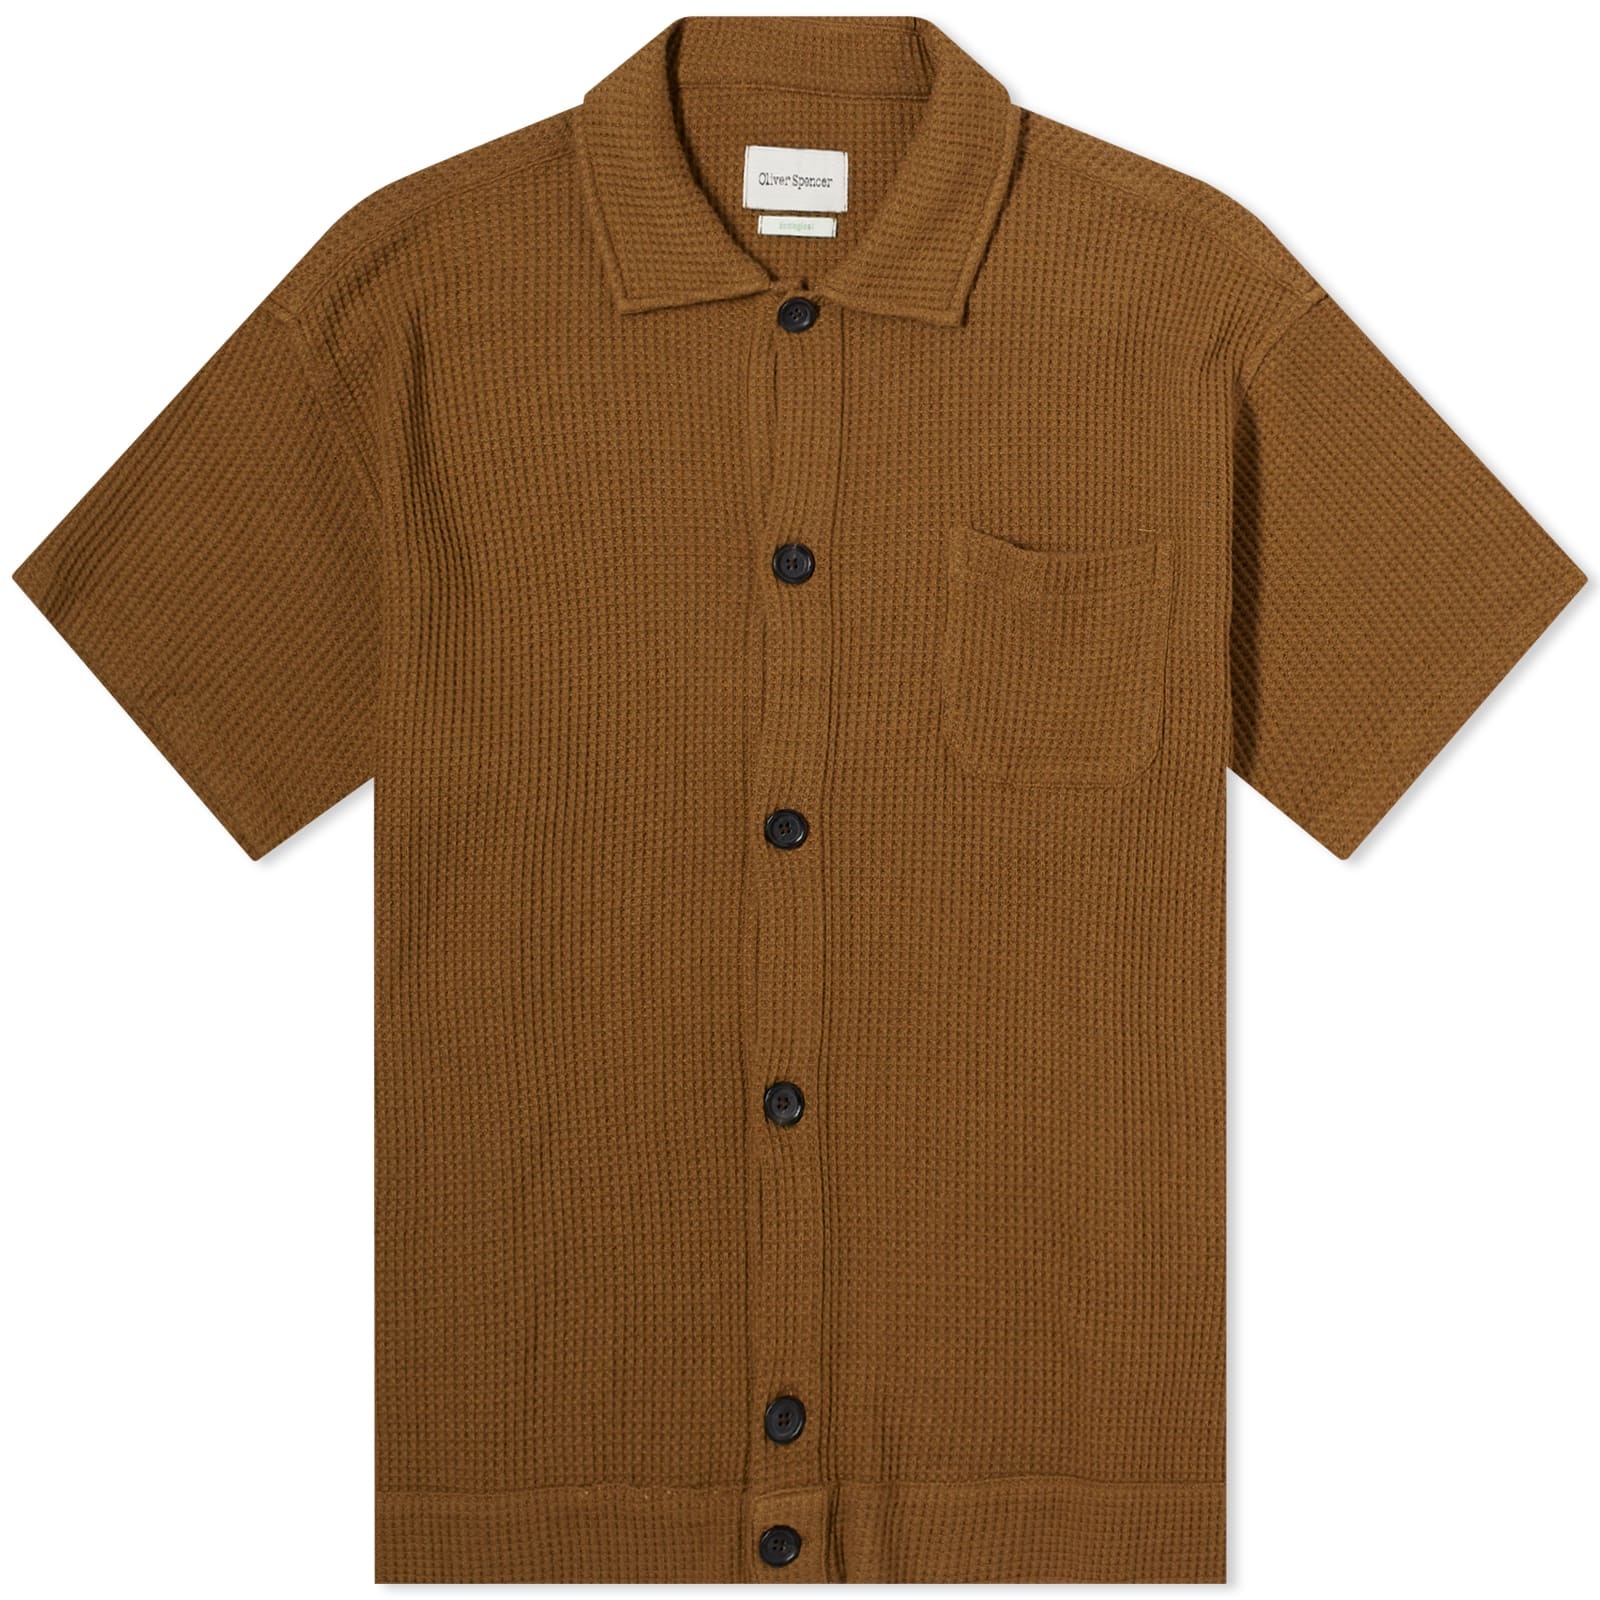 Oliver Spencer Ashby Short Sleeve Jersey Shirt - 1